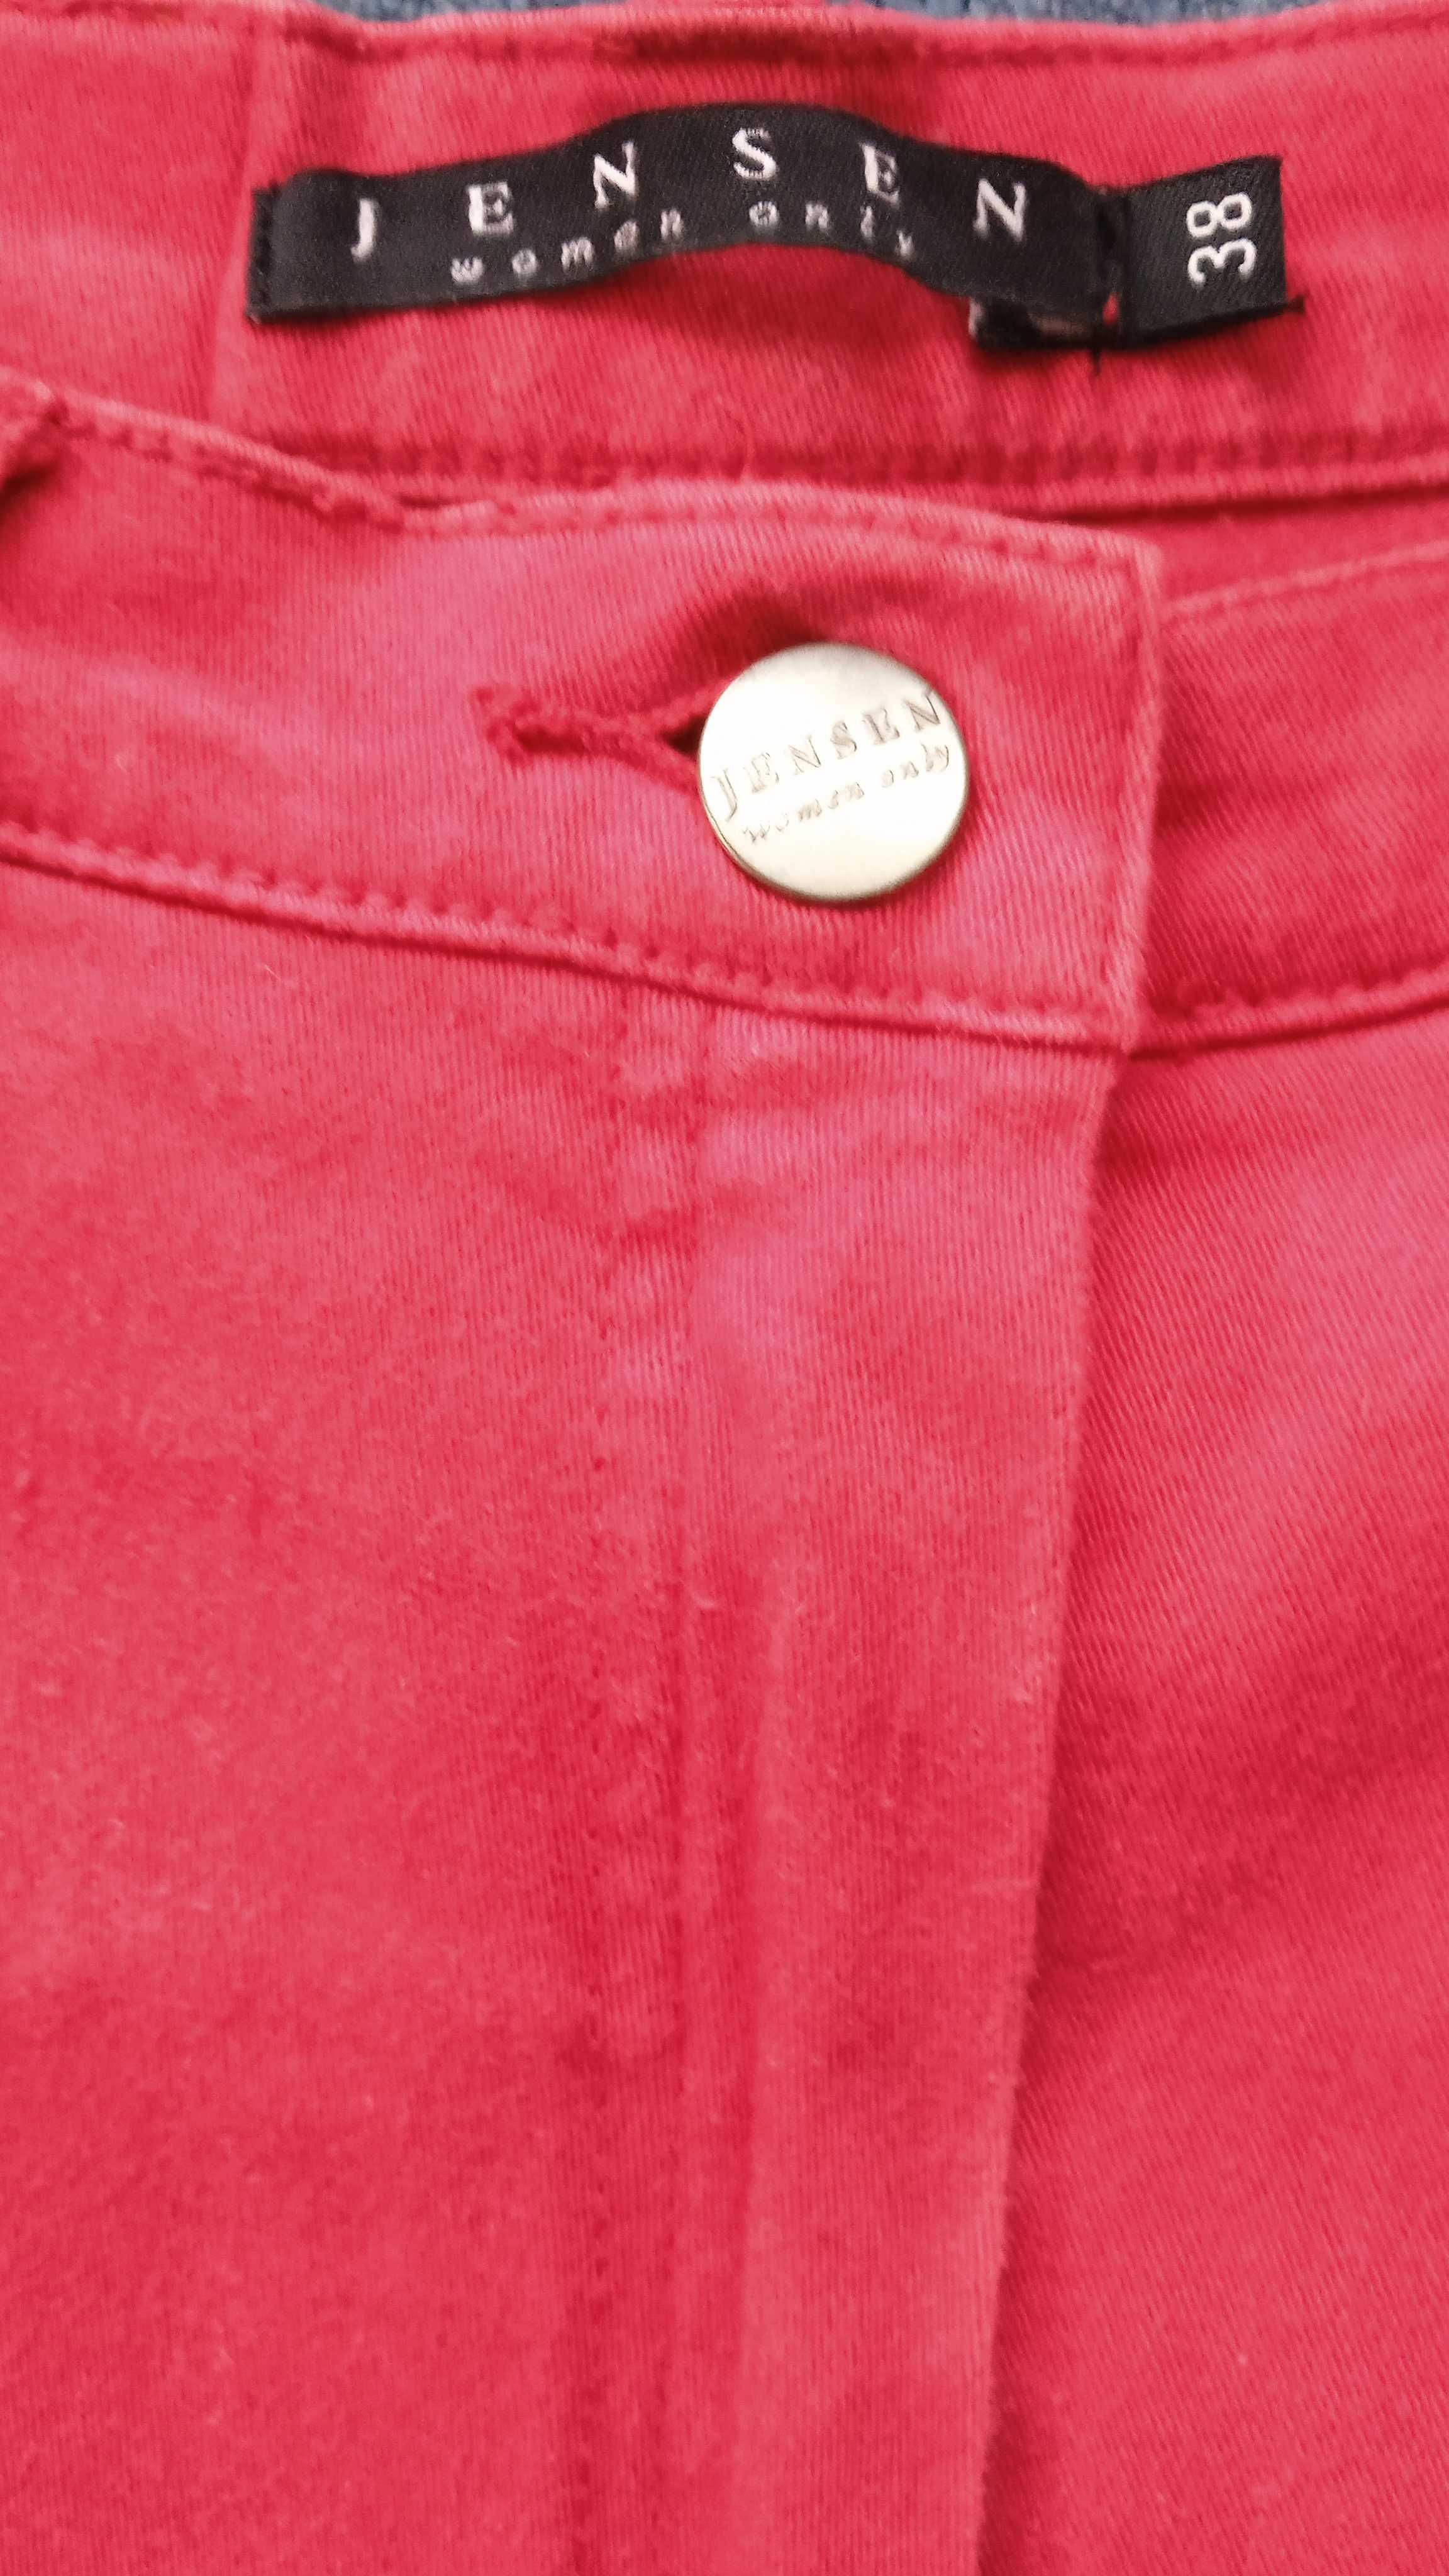 Spodnie damskie JEANSEN, rozmiar 38, czerwone.